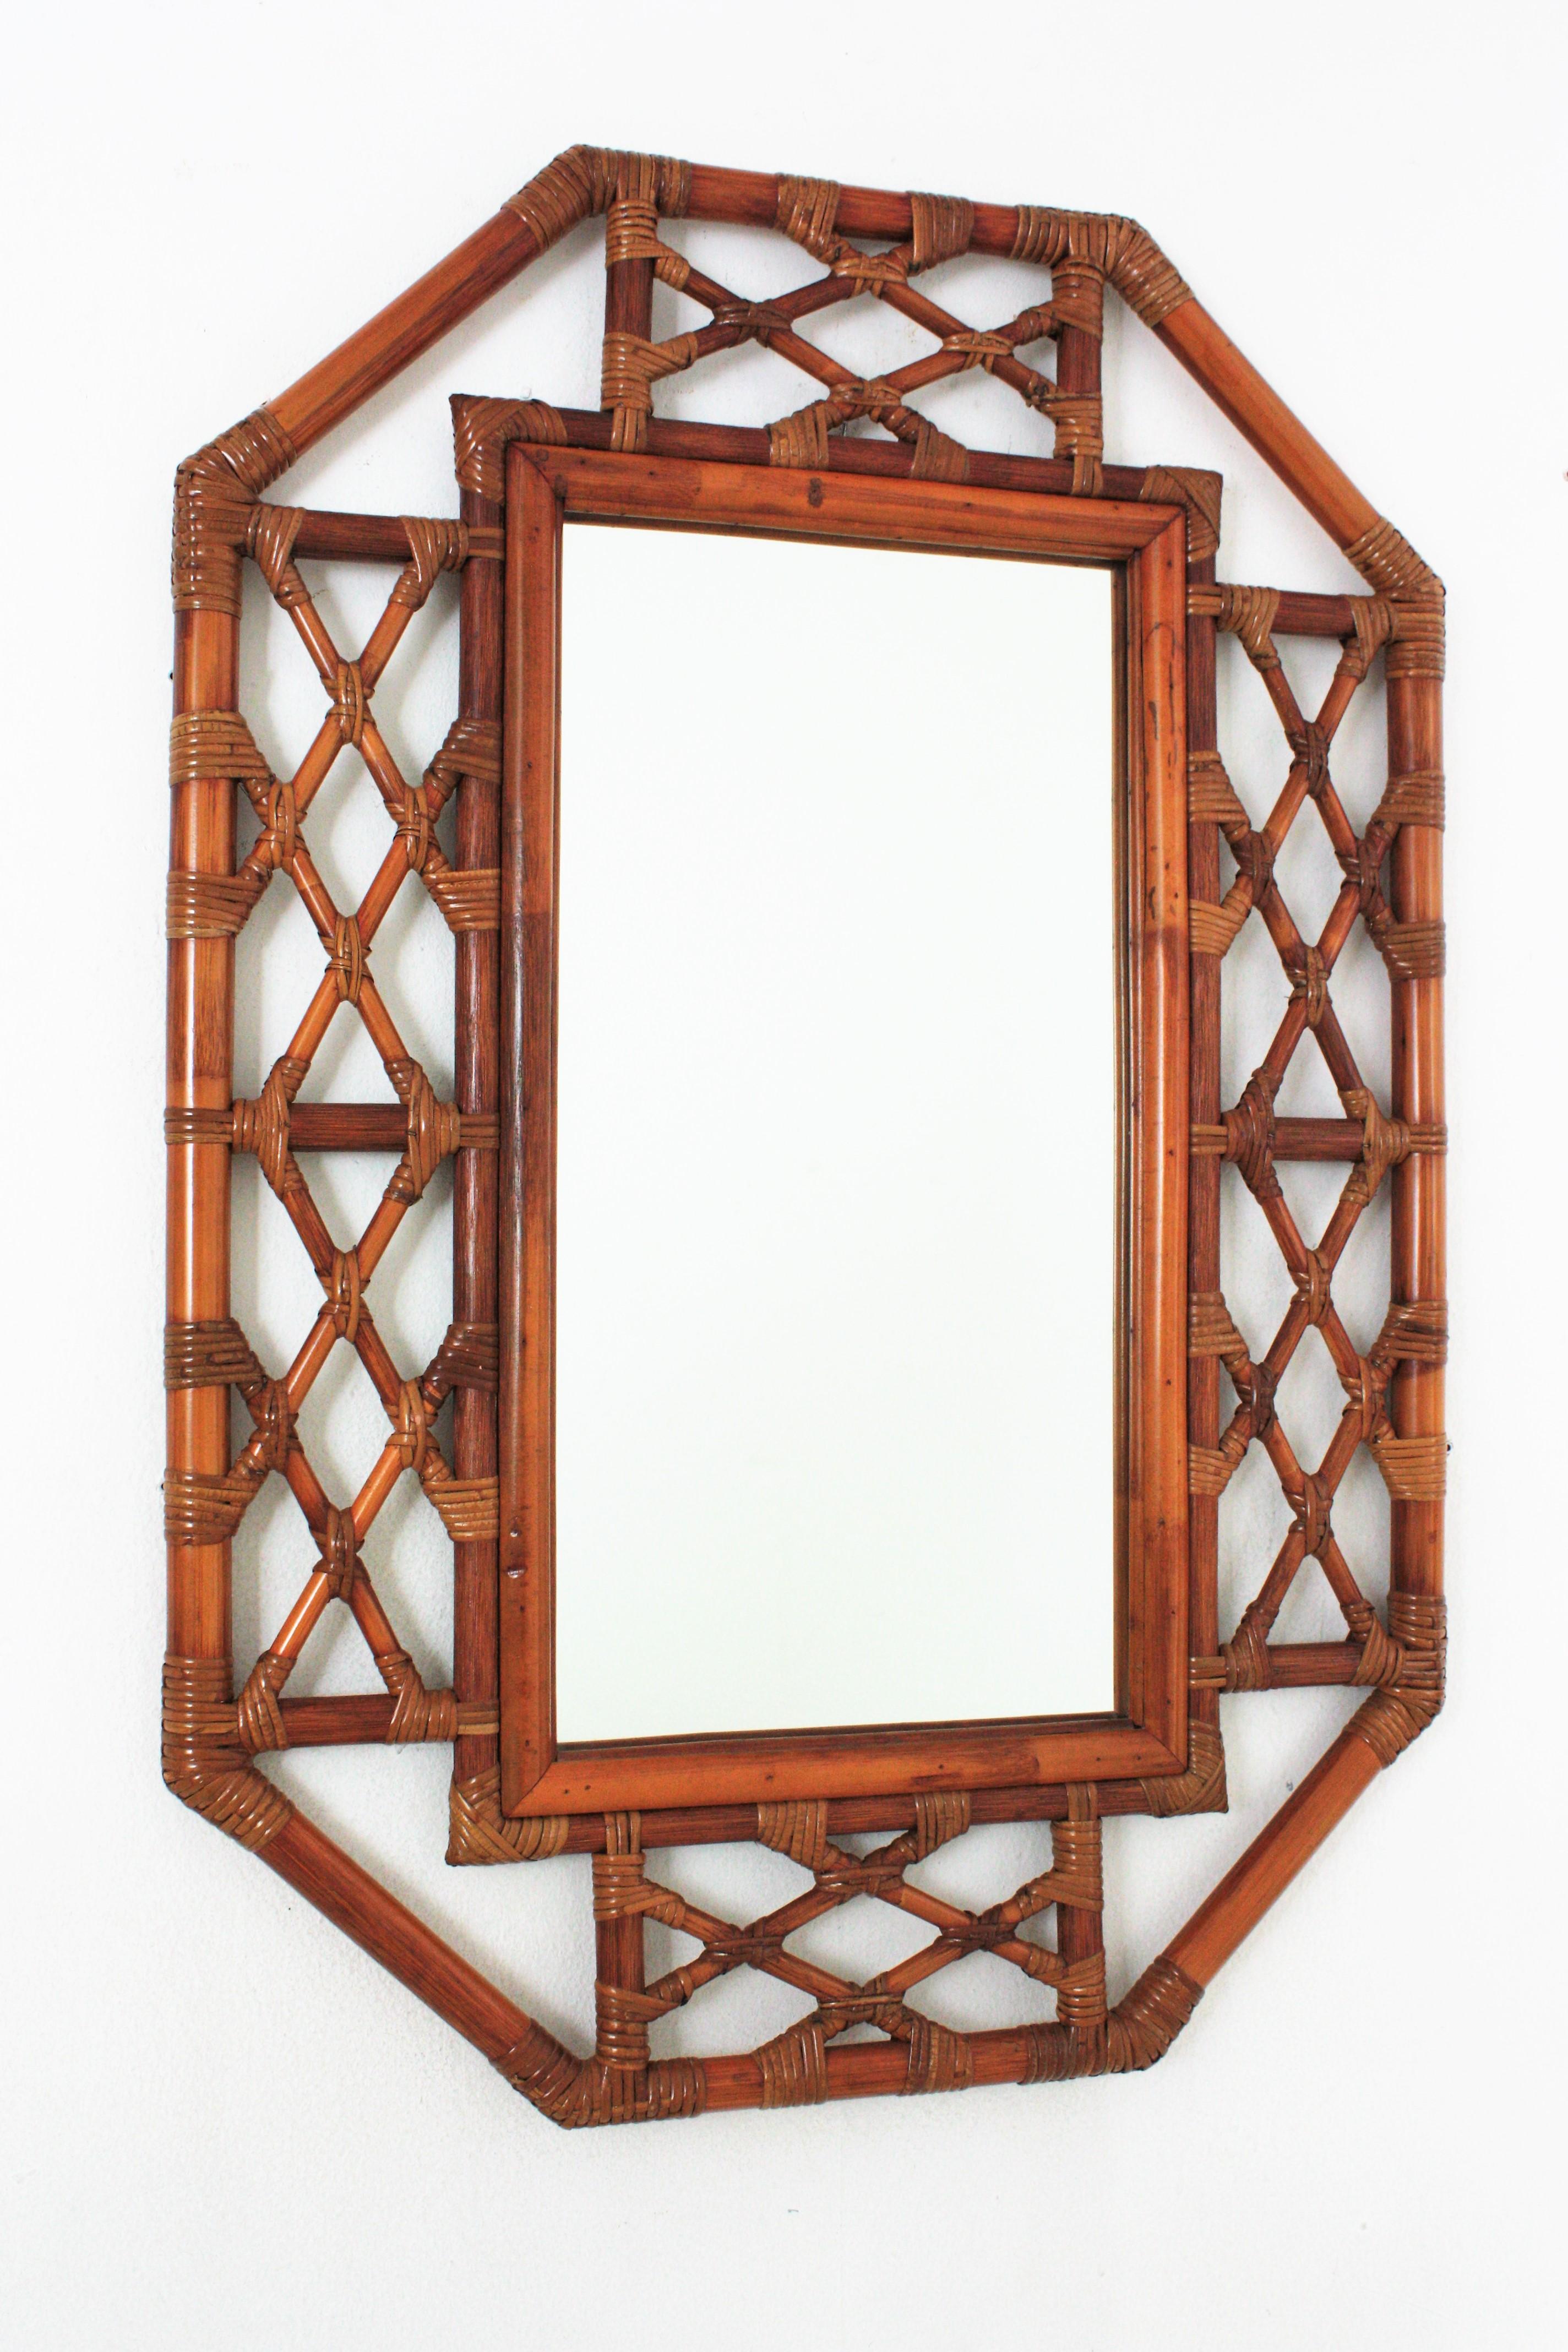 Spanischer Mid-Century Modern Bamboo Chinoiserie Tiki Stil achteckiger Wandspiegel. Spanien, 1960er Jahre.
Wunderschöner orientalisch inspirierter Spiegel, handgefertigt aus Bambus und Rattqan-Stöcken. Er hat einen sehr dekorativen Rahmen mit